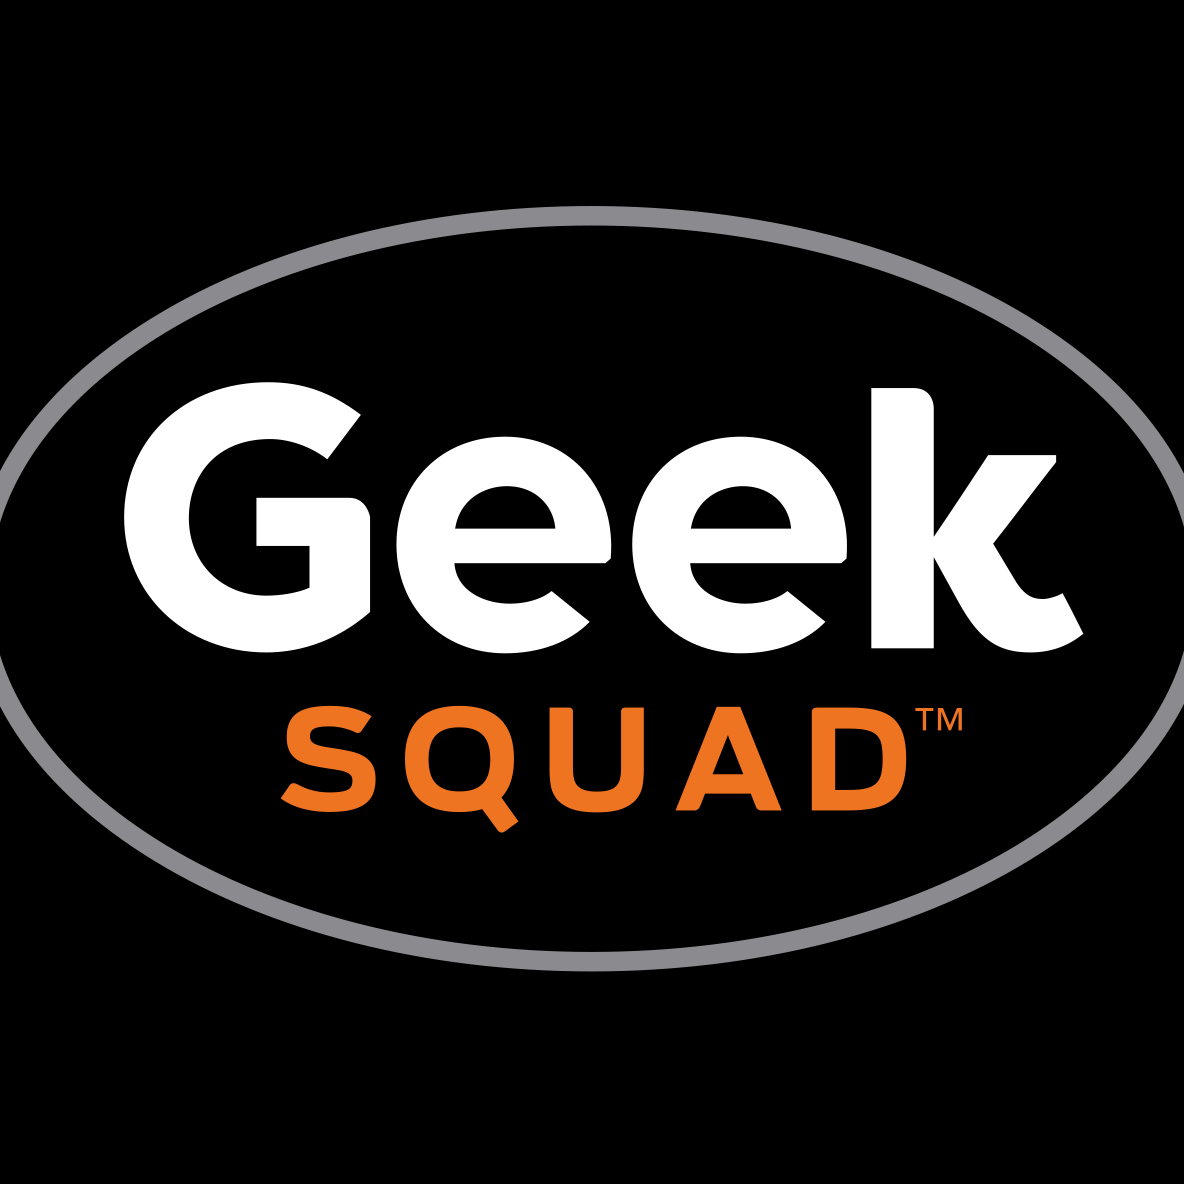 Geek Squad logo